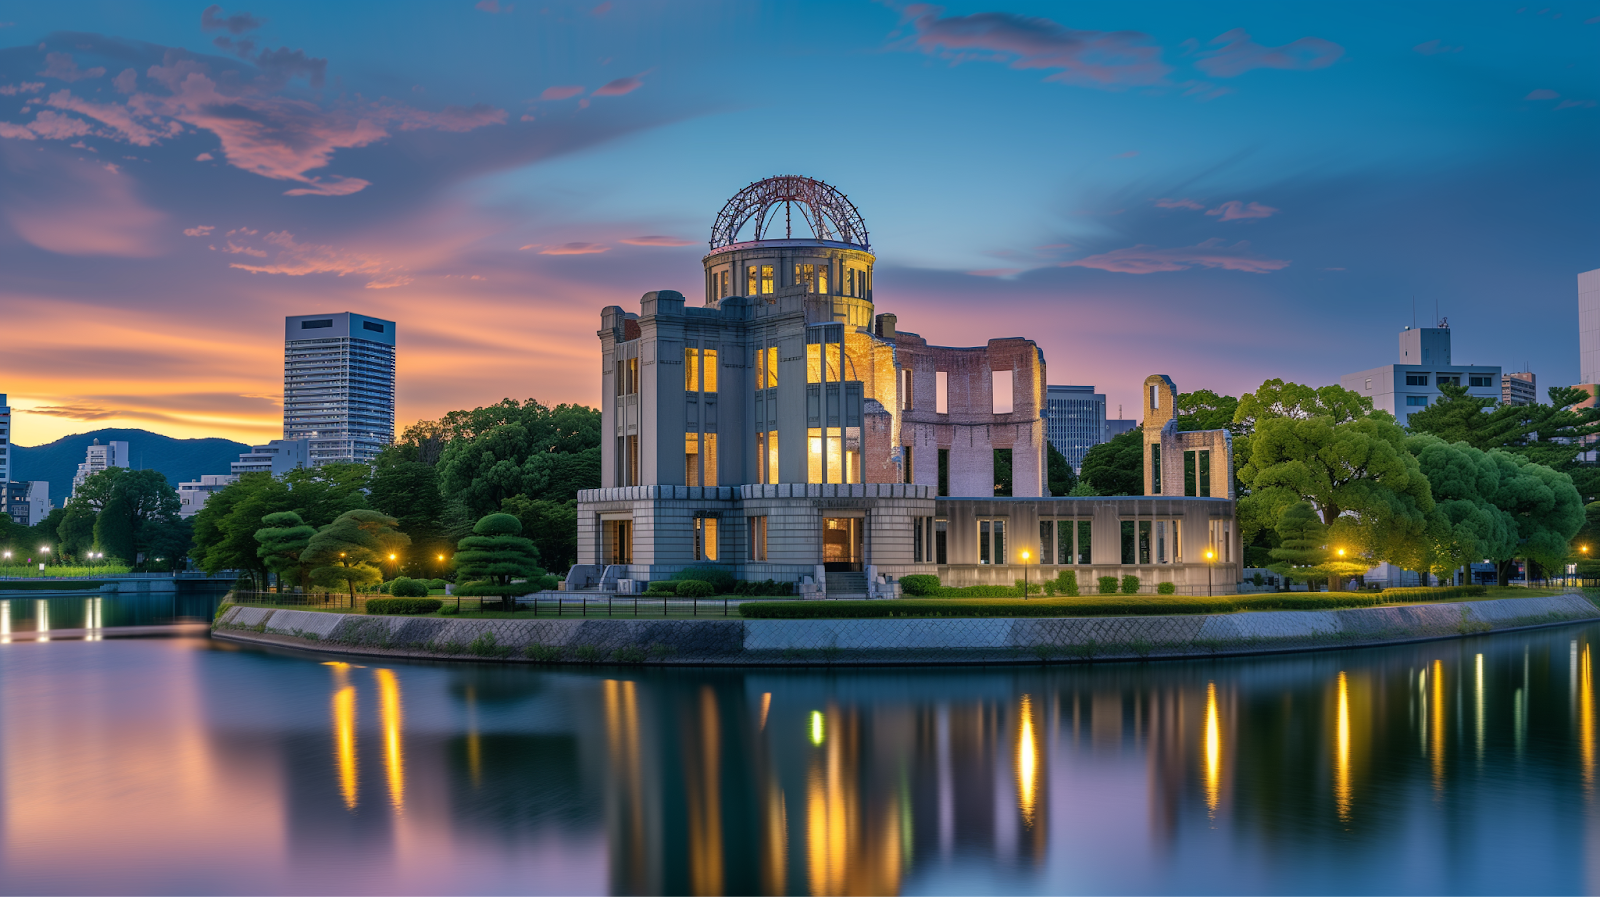 Shot of Hiroshima Peace Memorial Park at dusk.